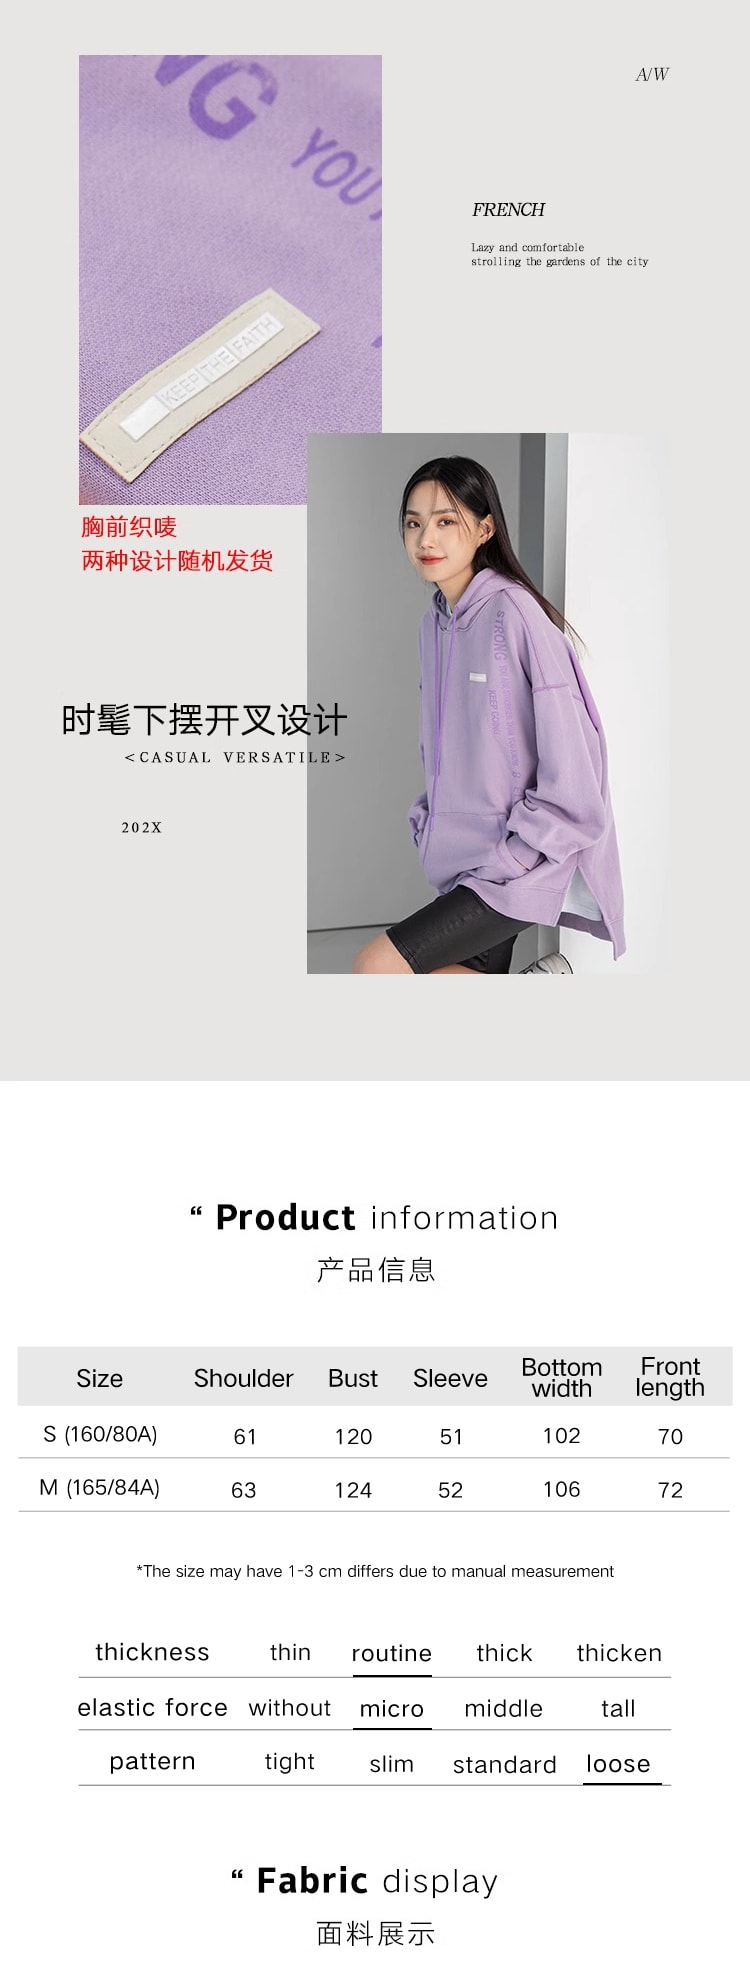 【中國直郵】HSPM 新款撞色連帽休閒衛衣 紫色 M